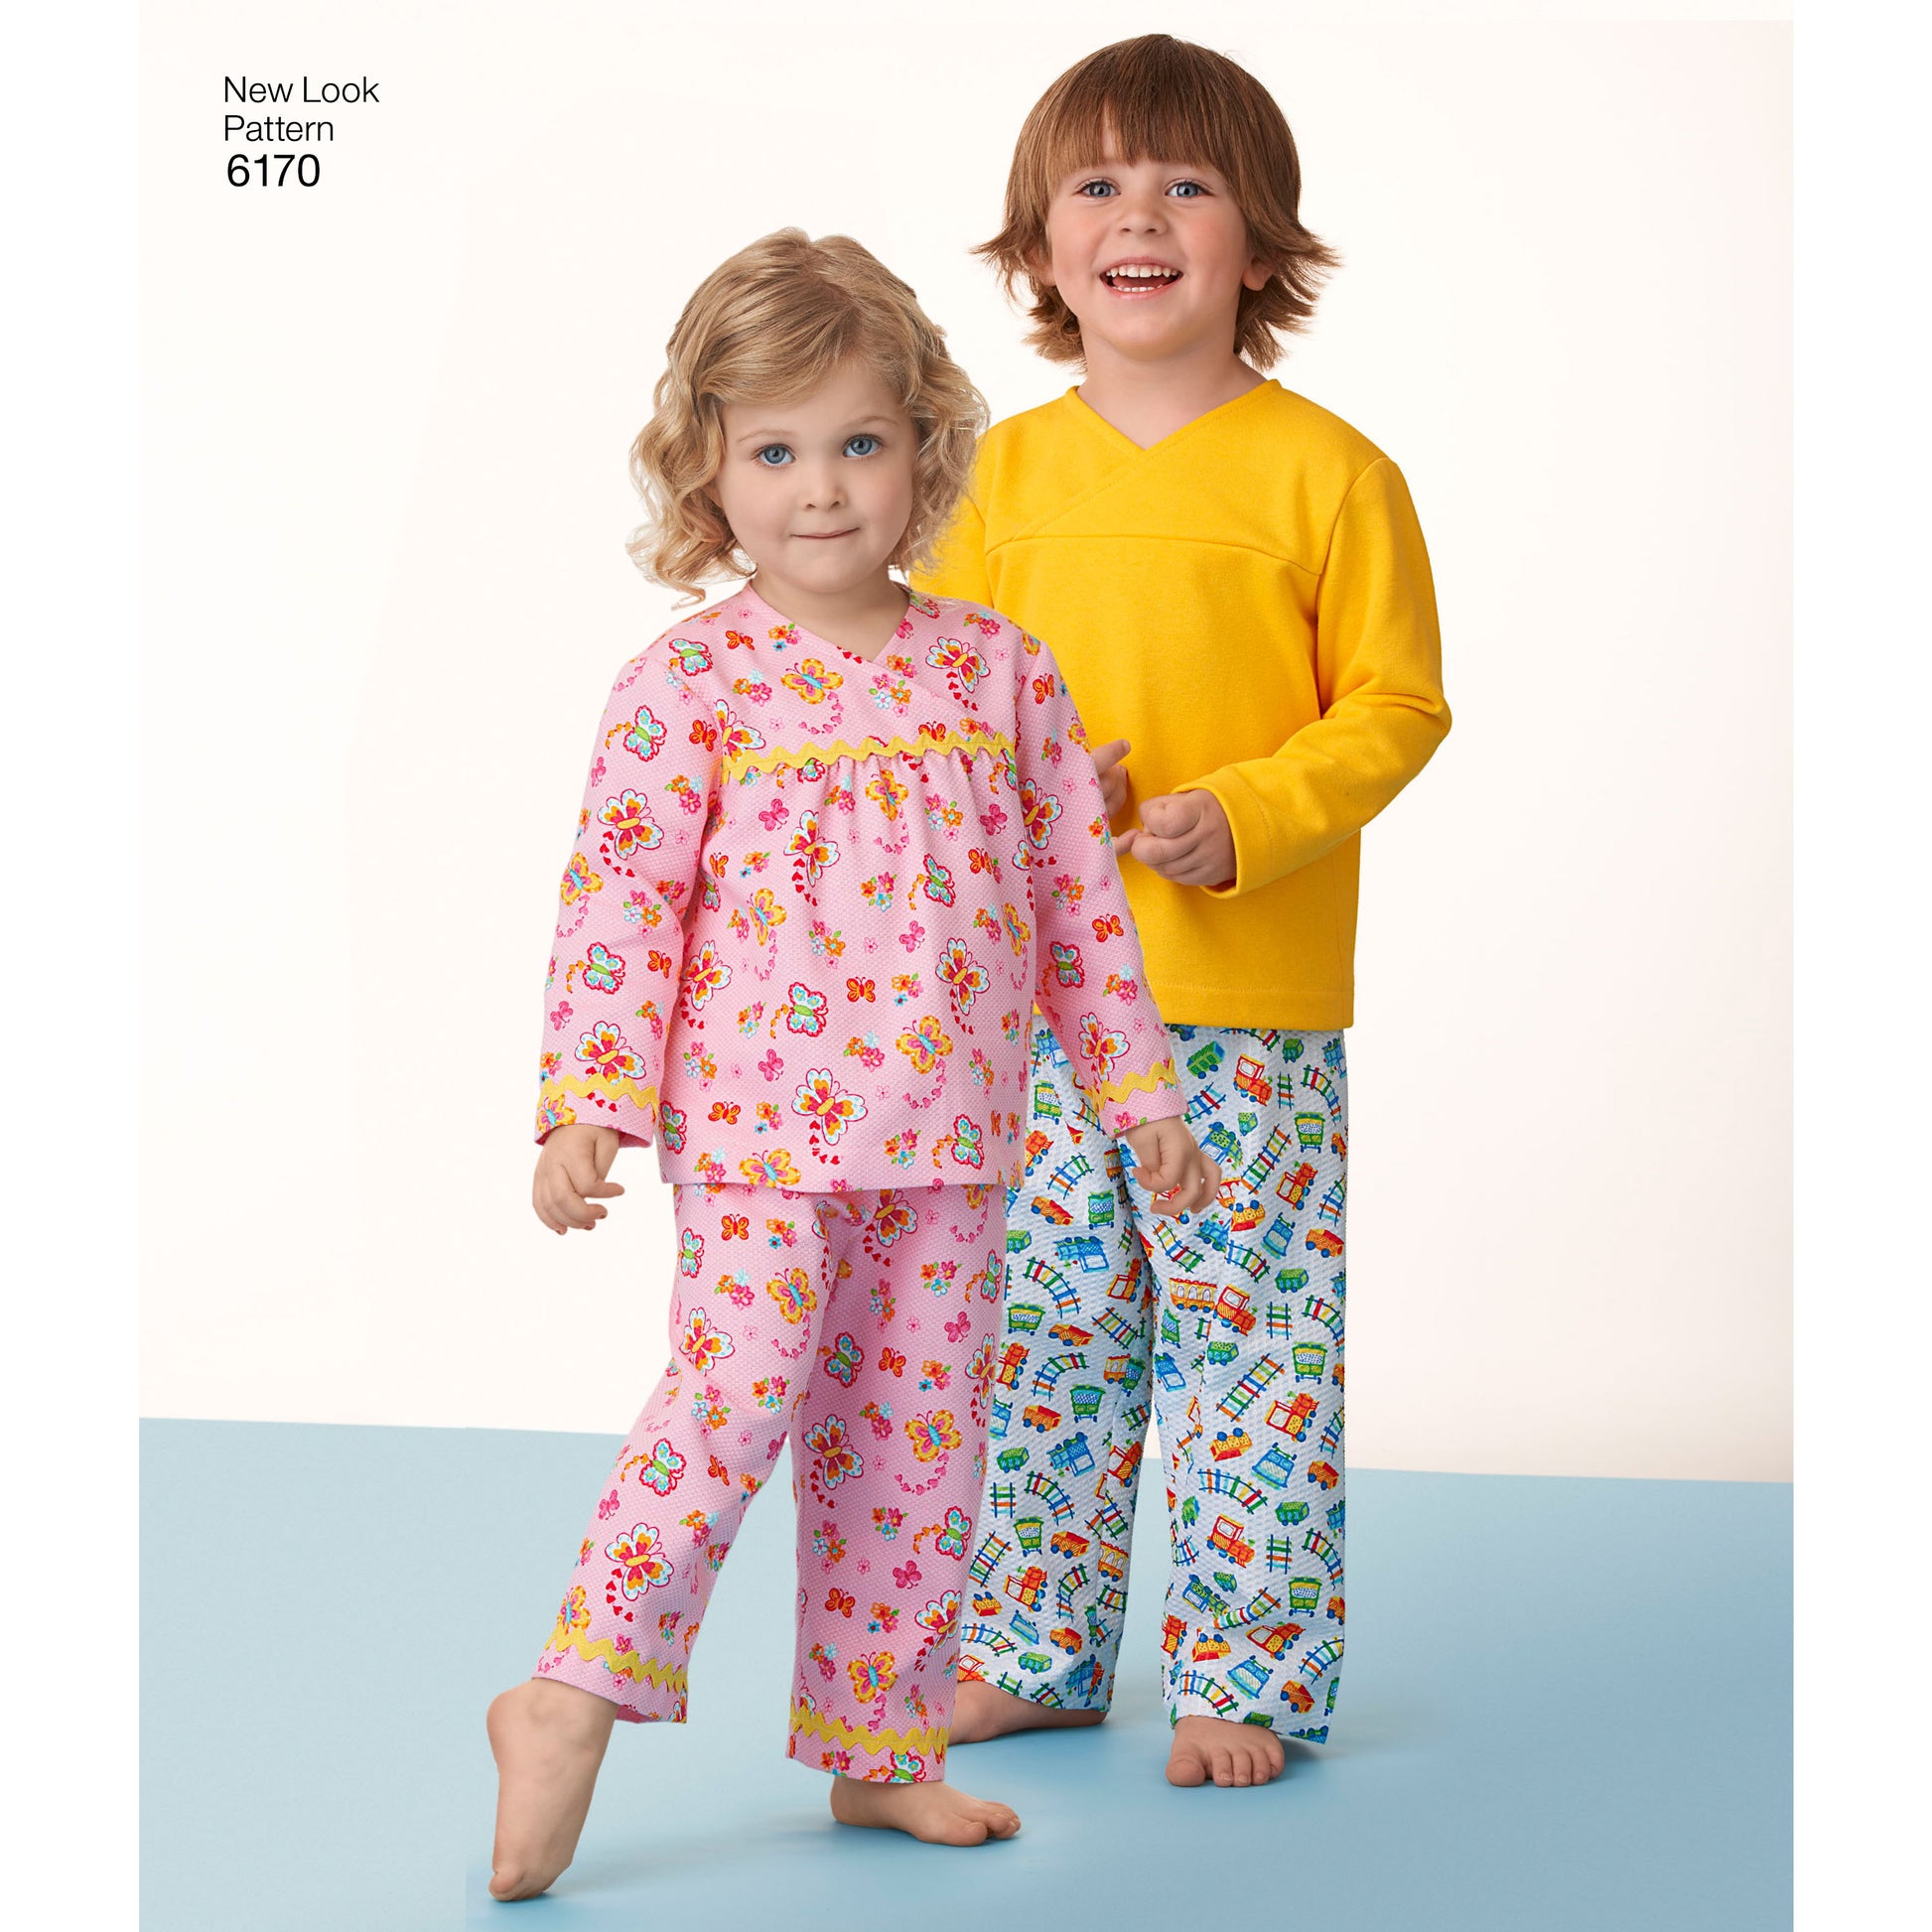 Symönster New Look 6170 - Top Byxa Pyjamas - Baby | Bild 3